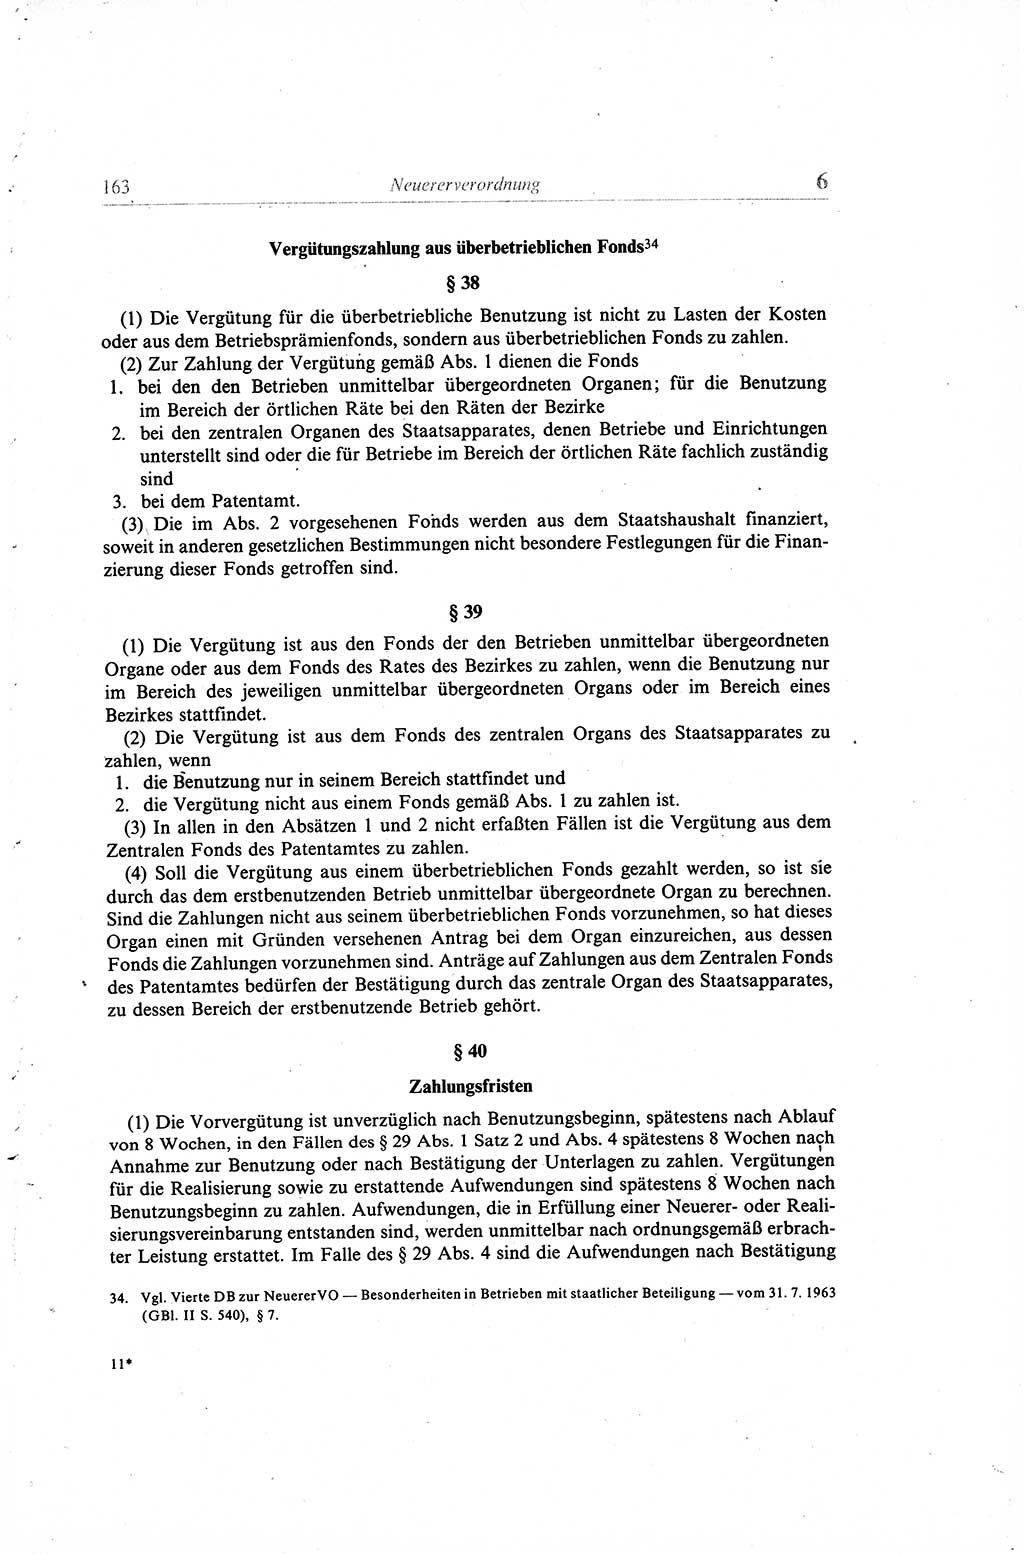 Gesetzbuch der Arbeit (GBA) und andere ausgewählte rechtliche Bestimmungen [Deutsche Demokratische Republik (DDR)] 1968, Seite 163 (GBA DDR 1968, S. 163)